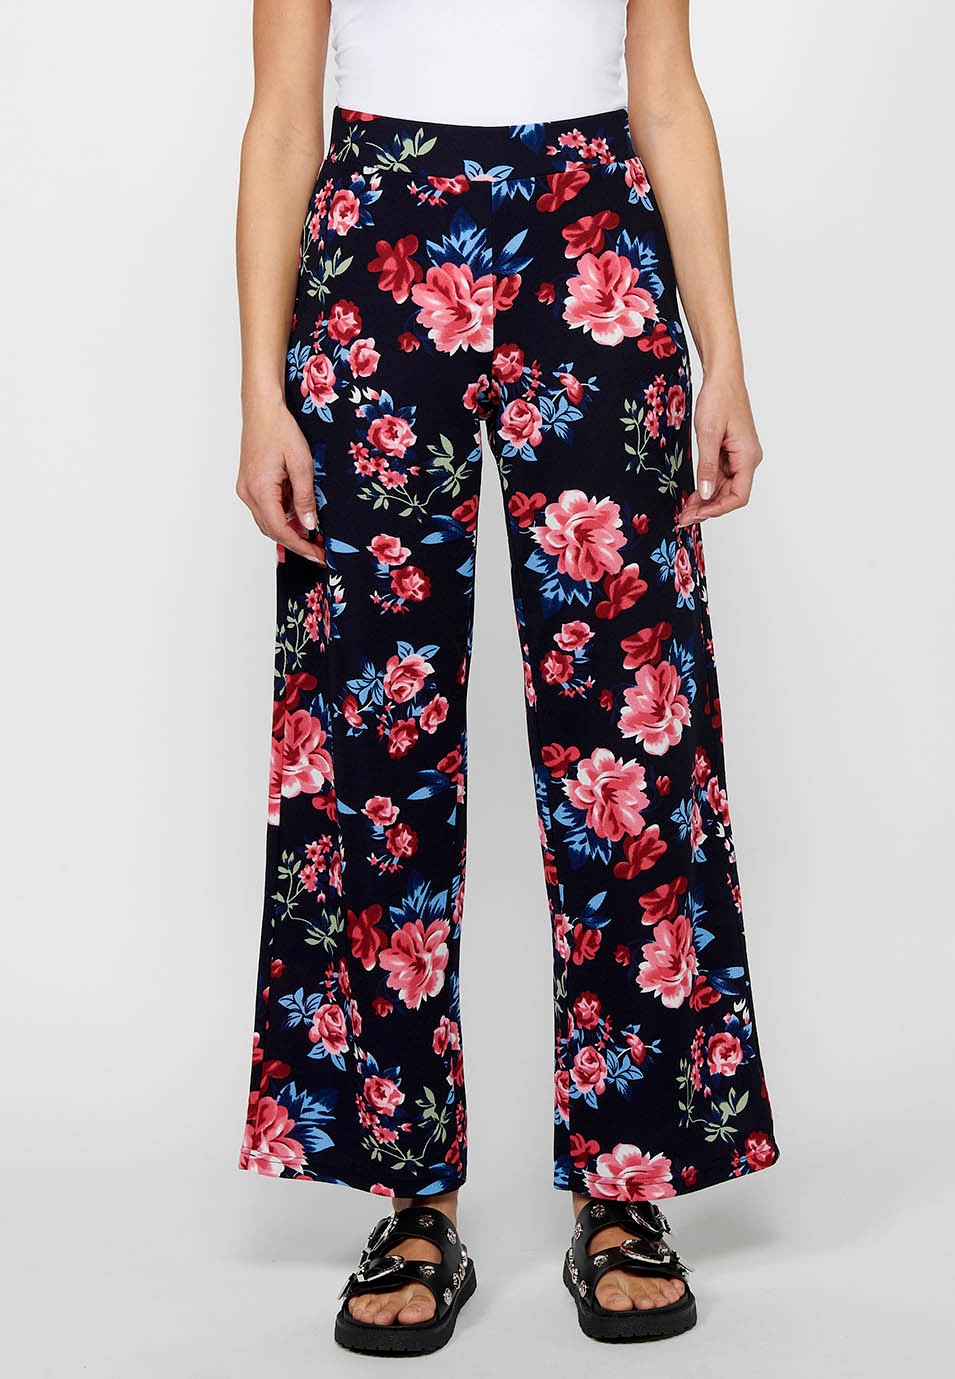 Pantalon long ample avec taille élastique caoutchoutée et imprimé floral Marine pour Femme 2